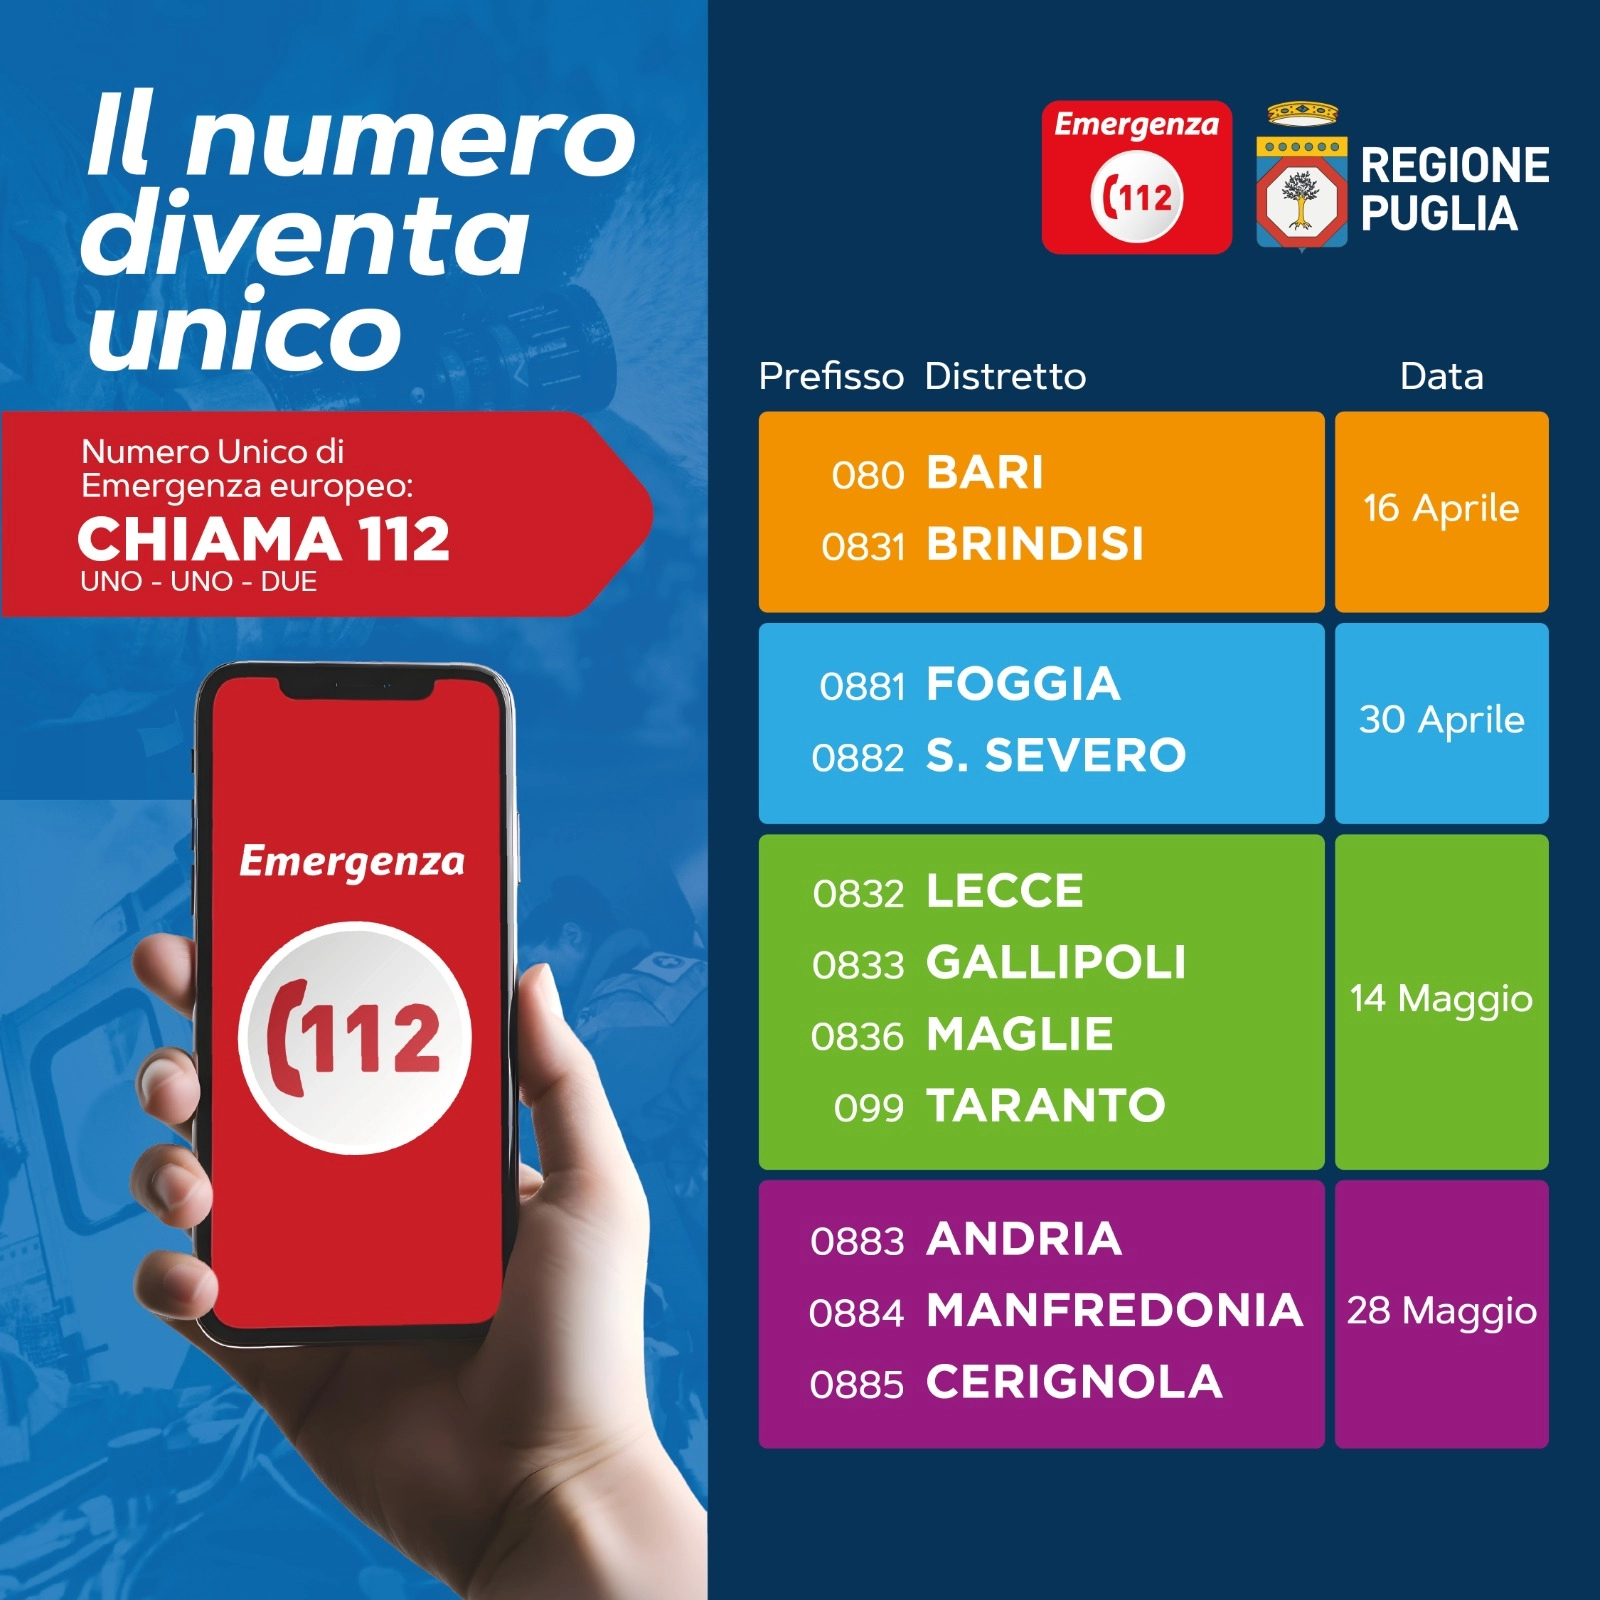 Numero Unico di Emergenza Europeo 1-1-2: da domani 28 maggio il Servizio sarà attivo in tutta la Puglia